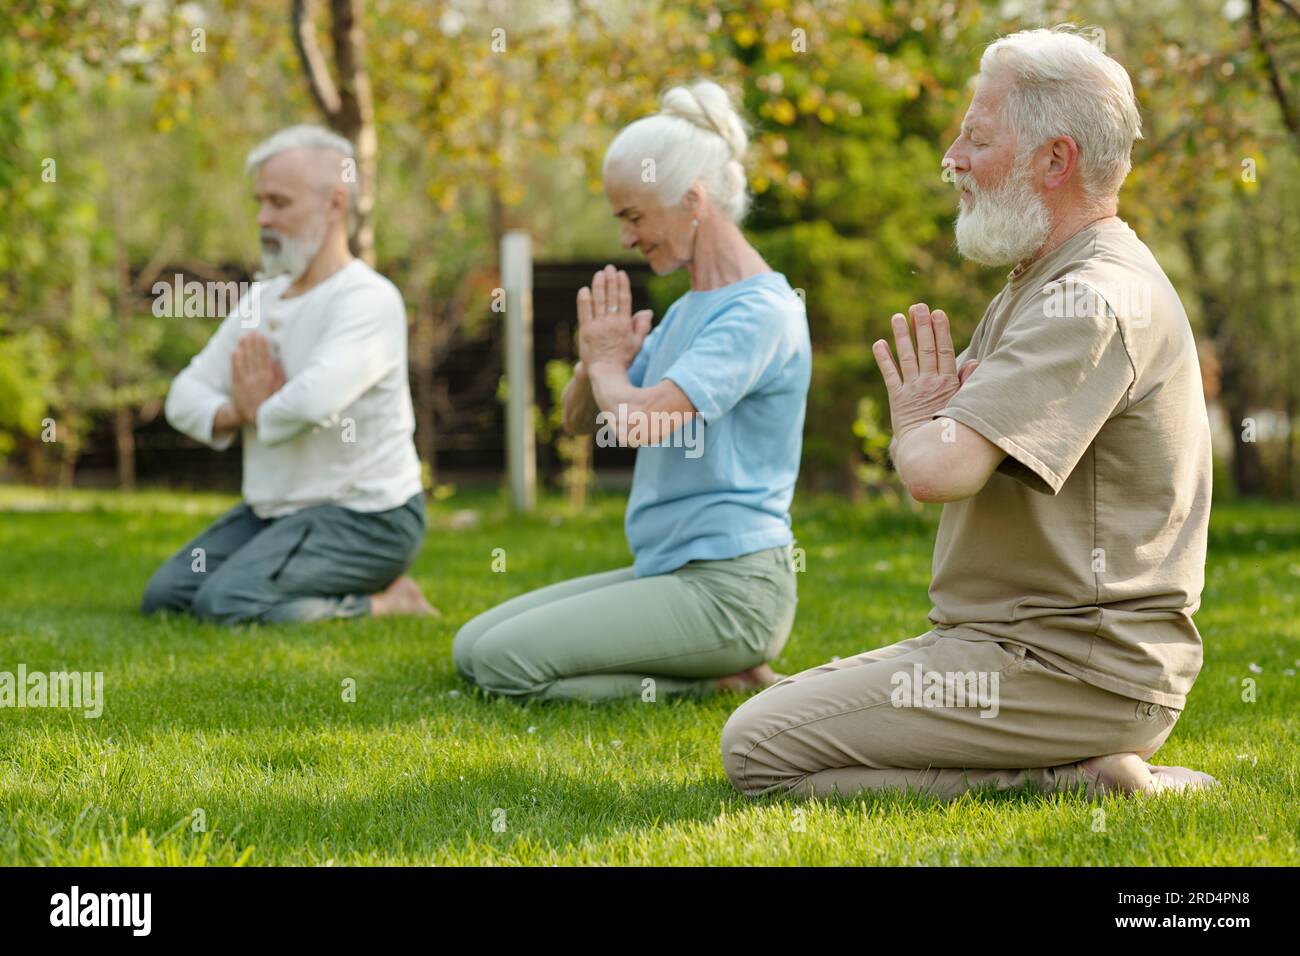 Konzentrieren Sie sich auf einen bärtigen Seniorenmann, der die Hände an der Brust zusammenhält, während er mit anderen Patienten des Altersheimes Yoga übt Stockfoto